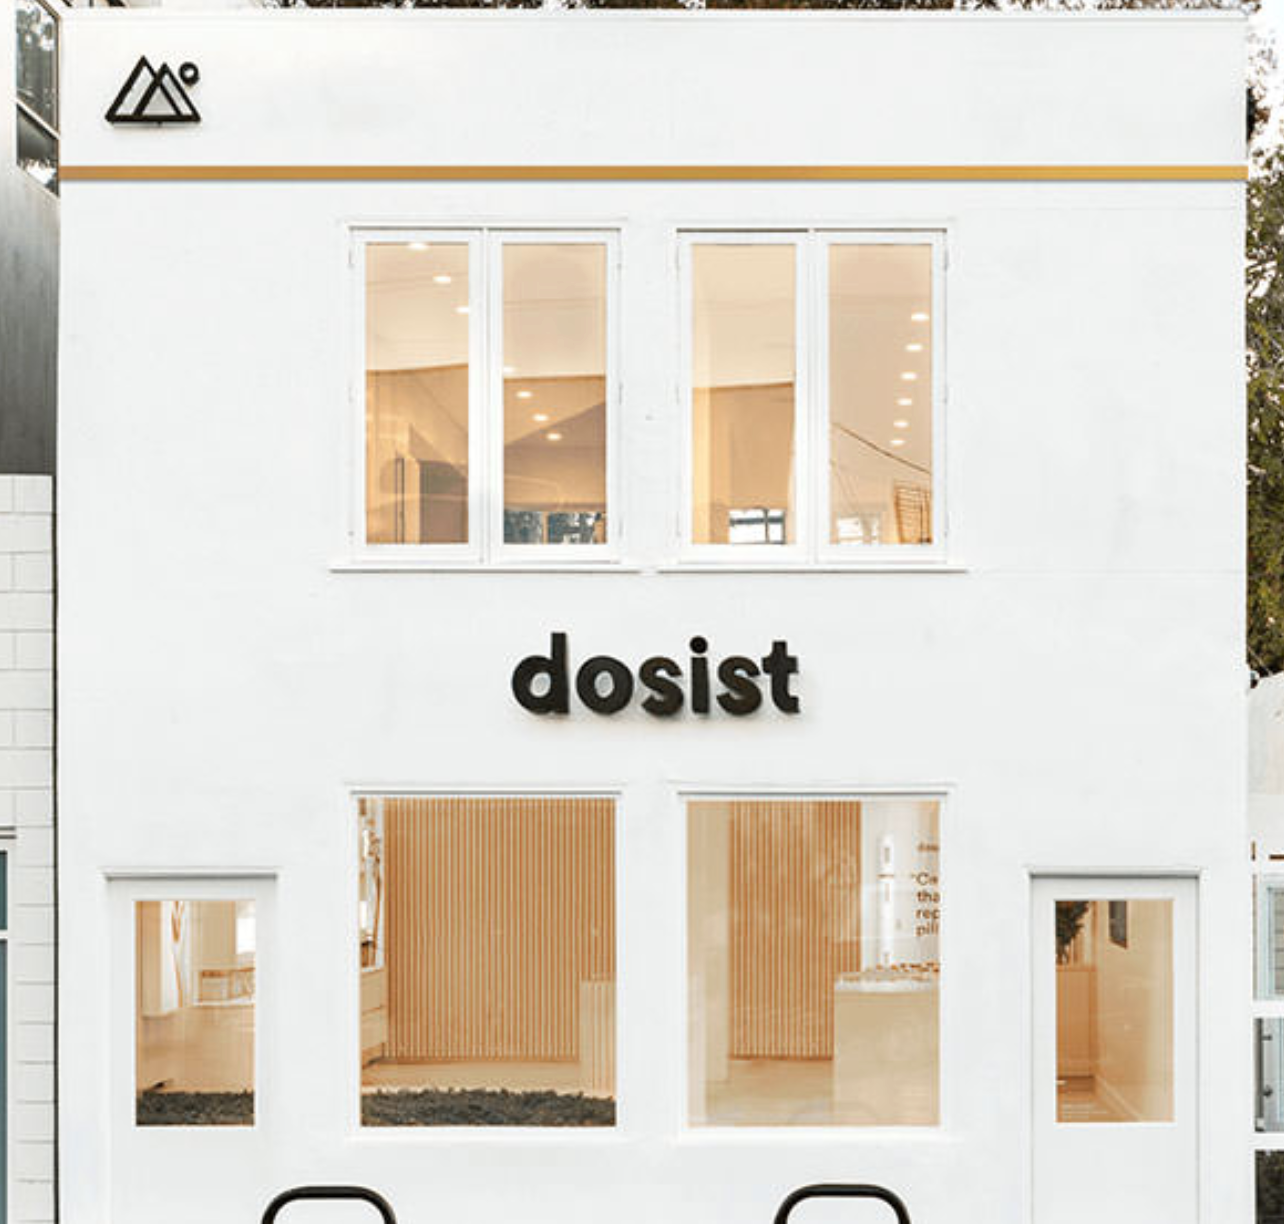 The Dosist store in California.